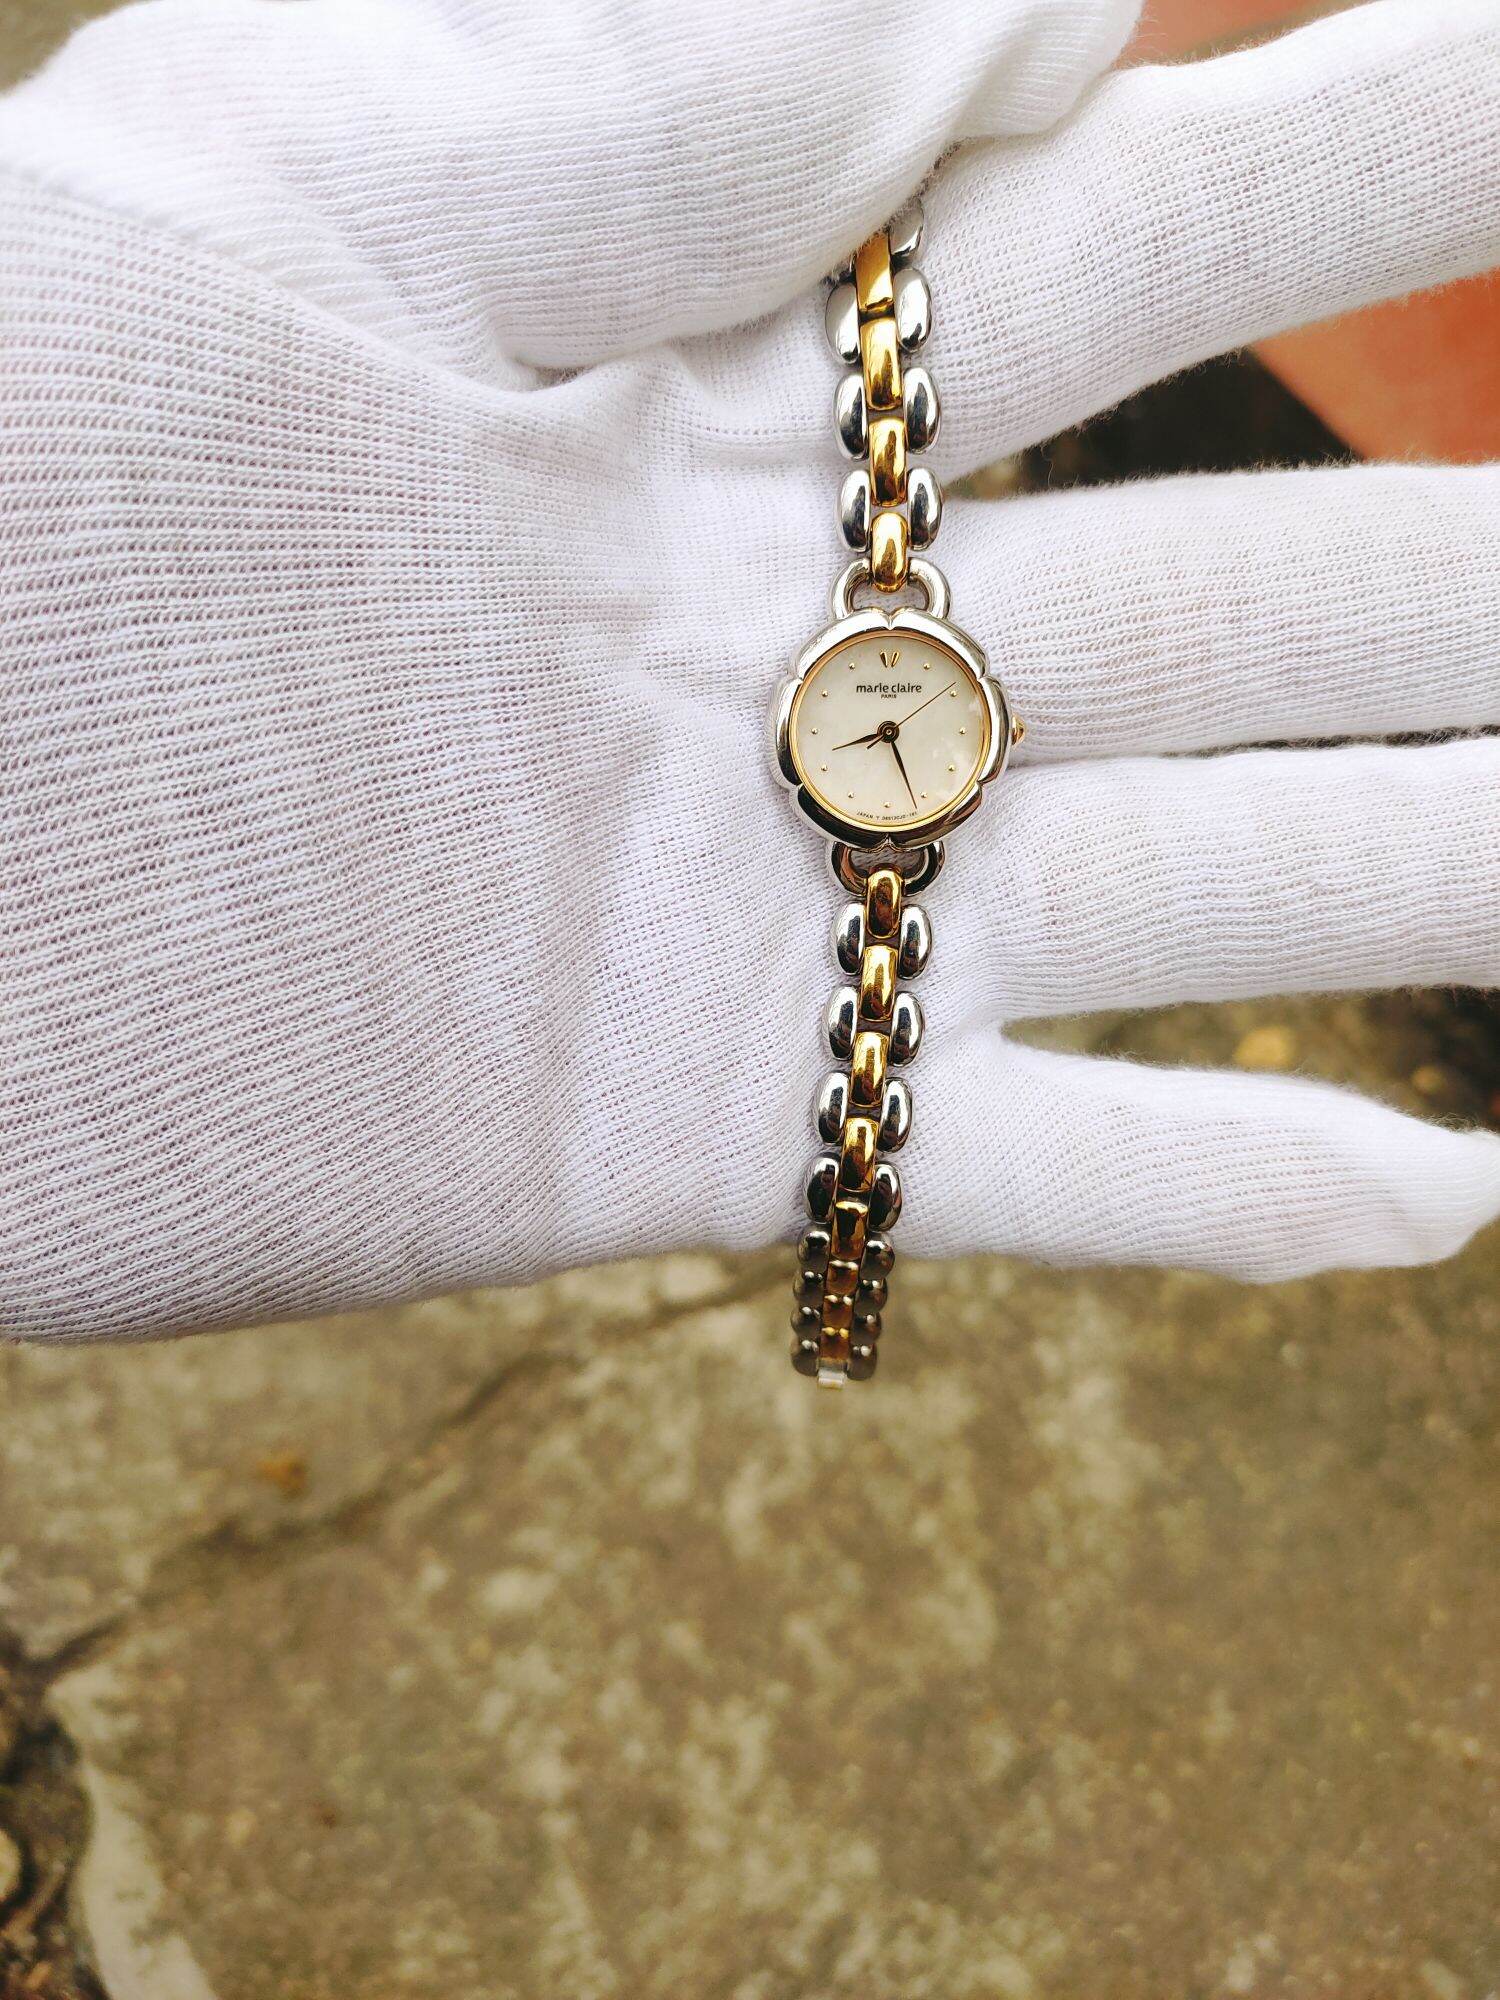 Đồng hồ Marie Claire ( máy japan) lắc nữ siêu đẹp hình thức đẹp size nhỏ 22mm cam kết hành chính hãng độ mói 9999%